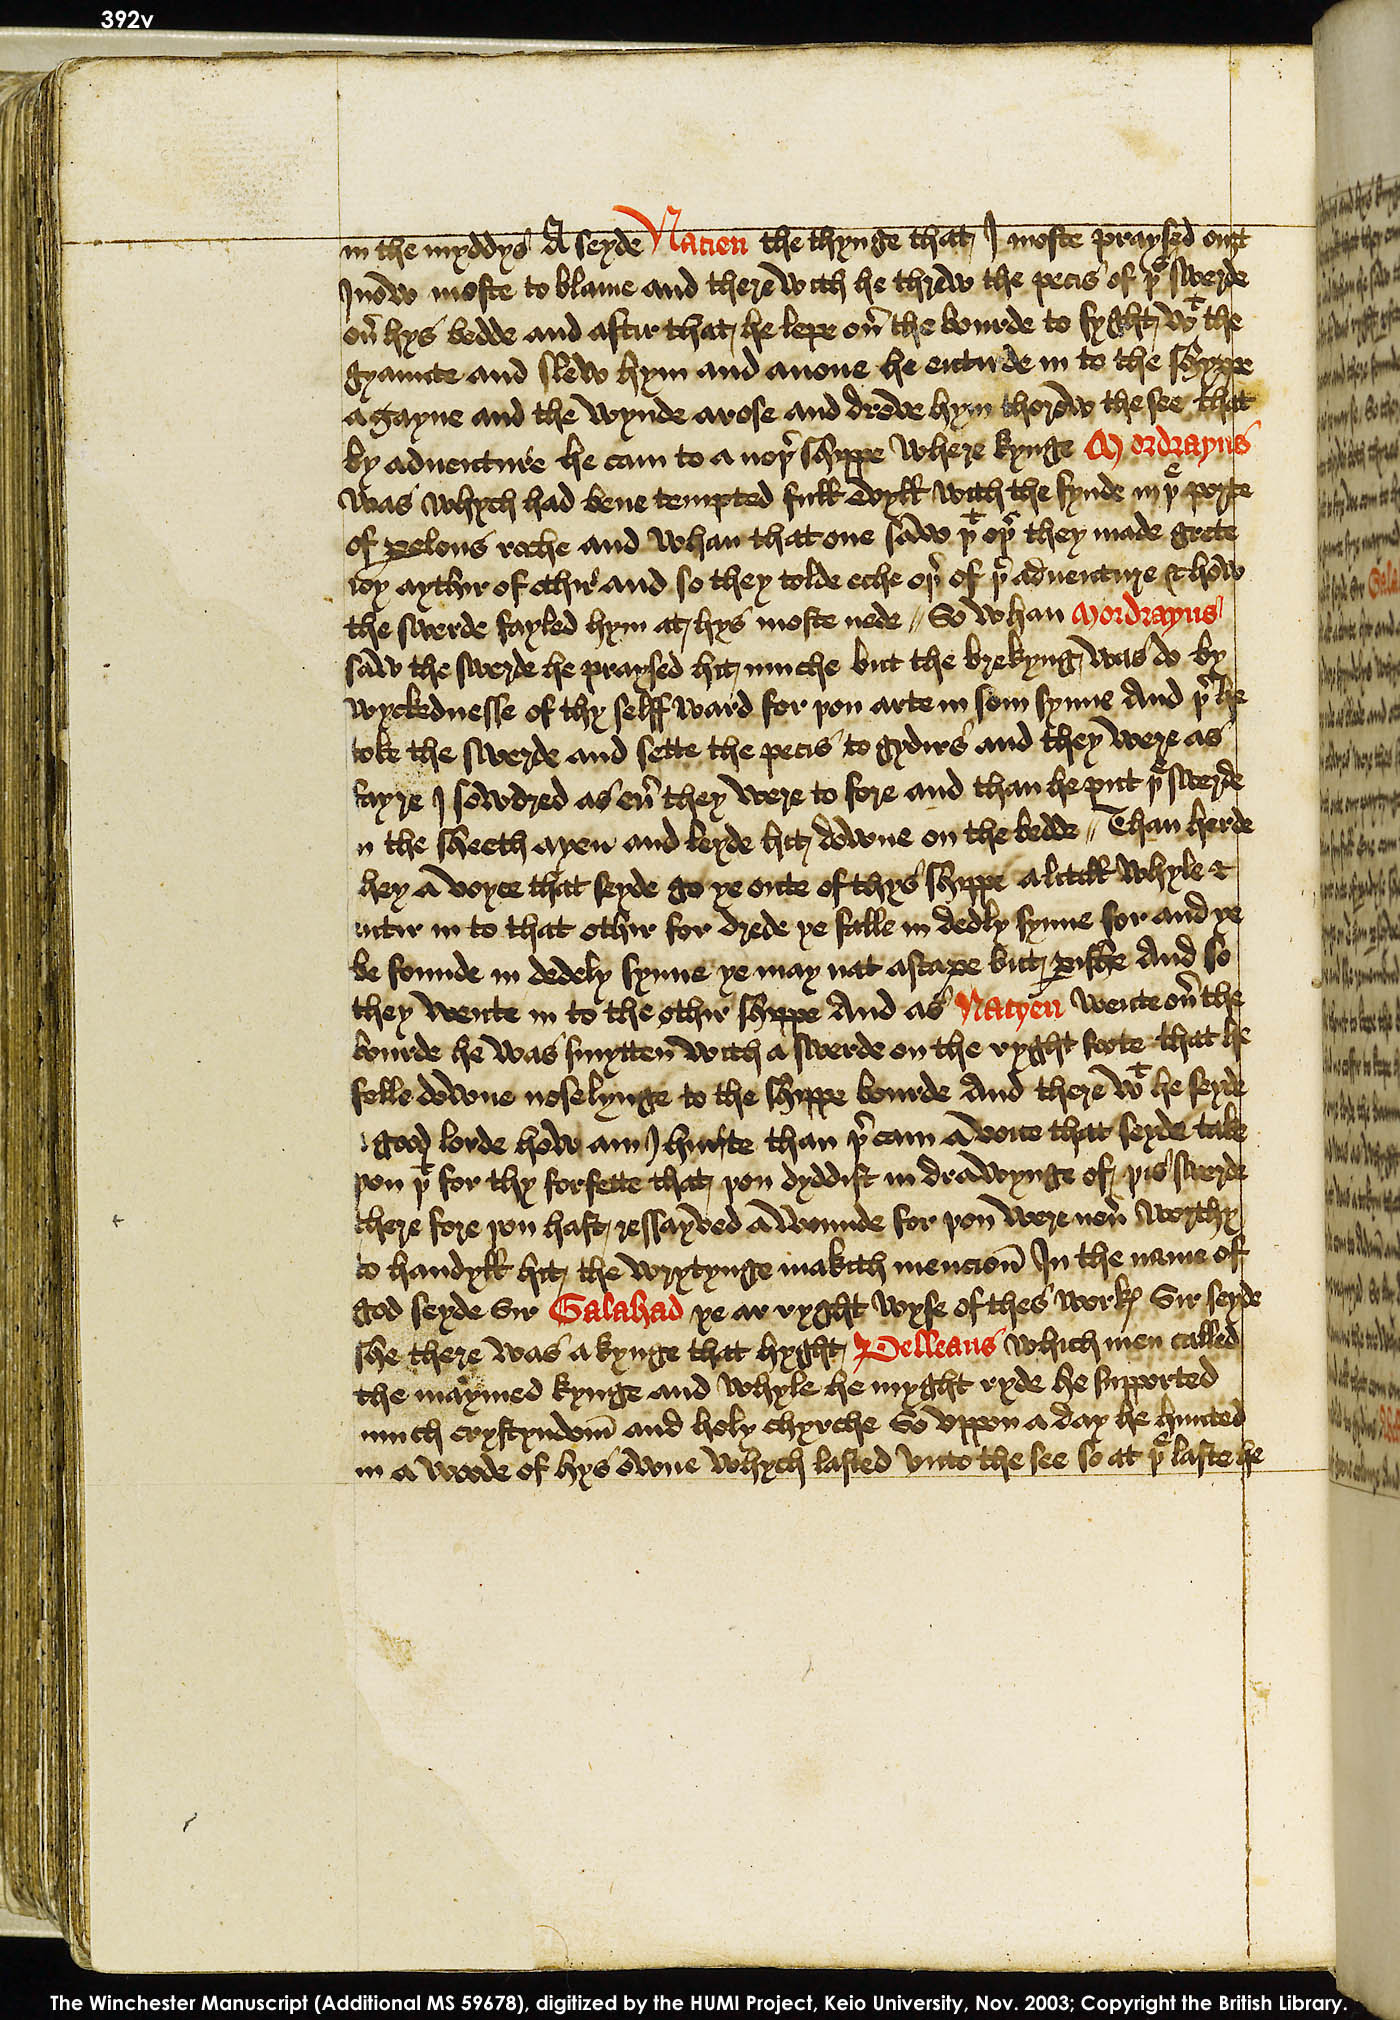 Folio 392v